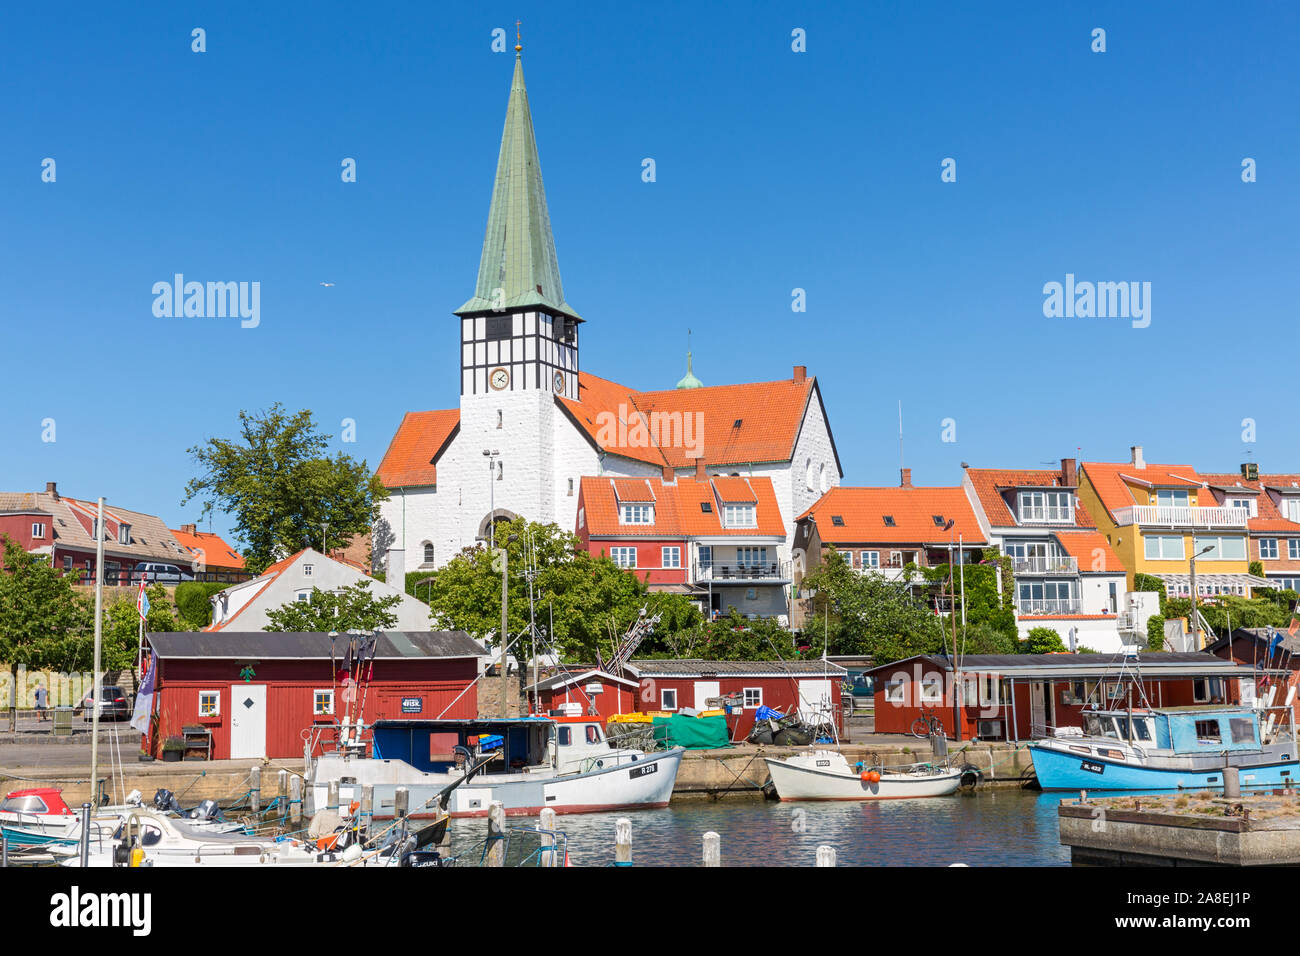 Rønne; Bornholm Hafen, Boote, Wohnhaeuser, Nikolai Kirche Foto Stock